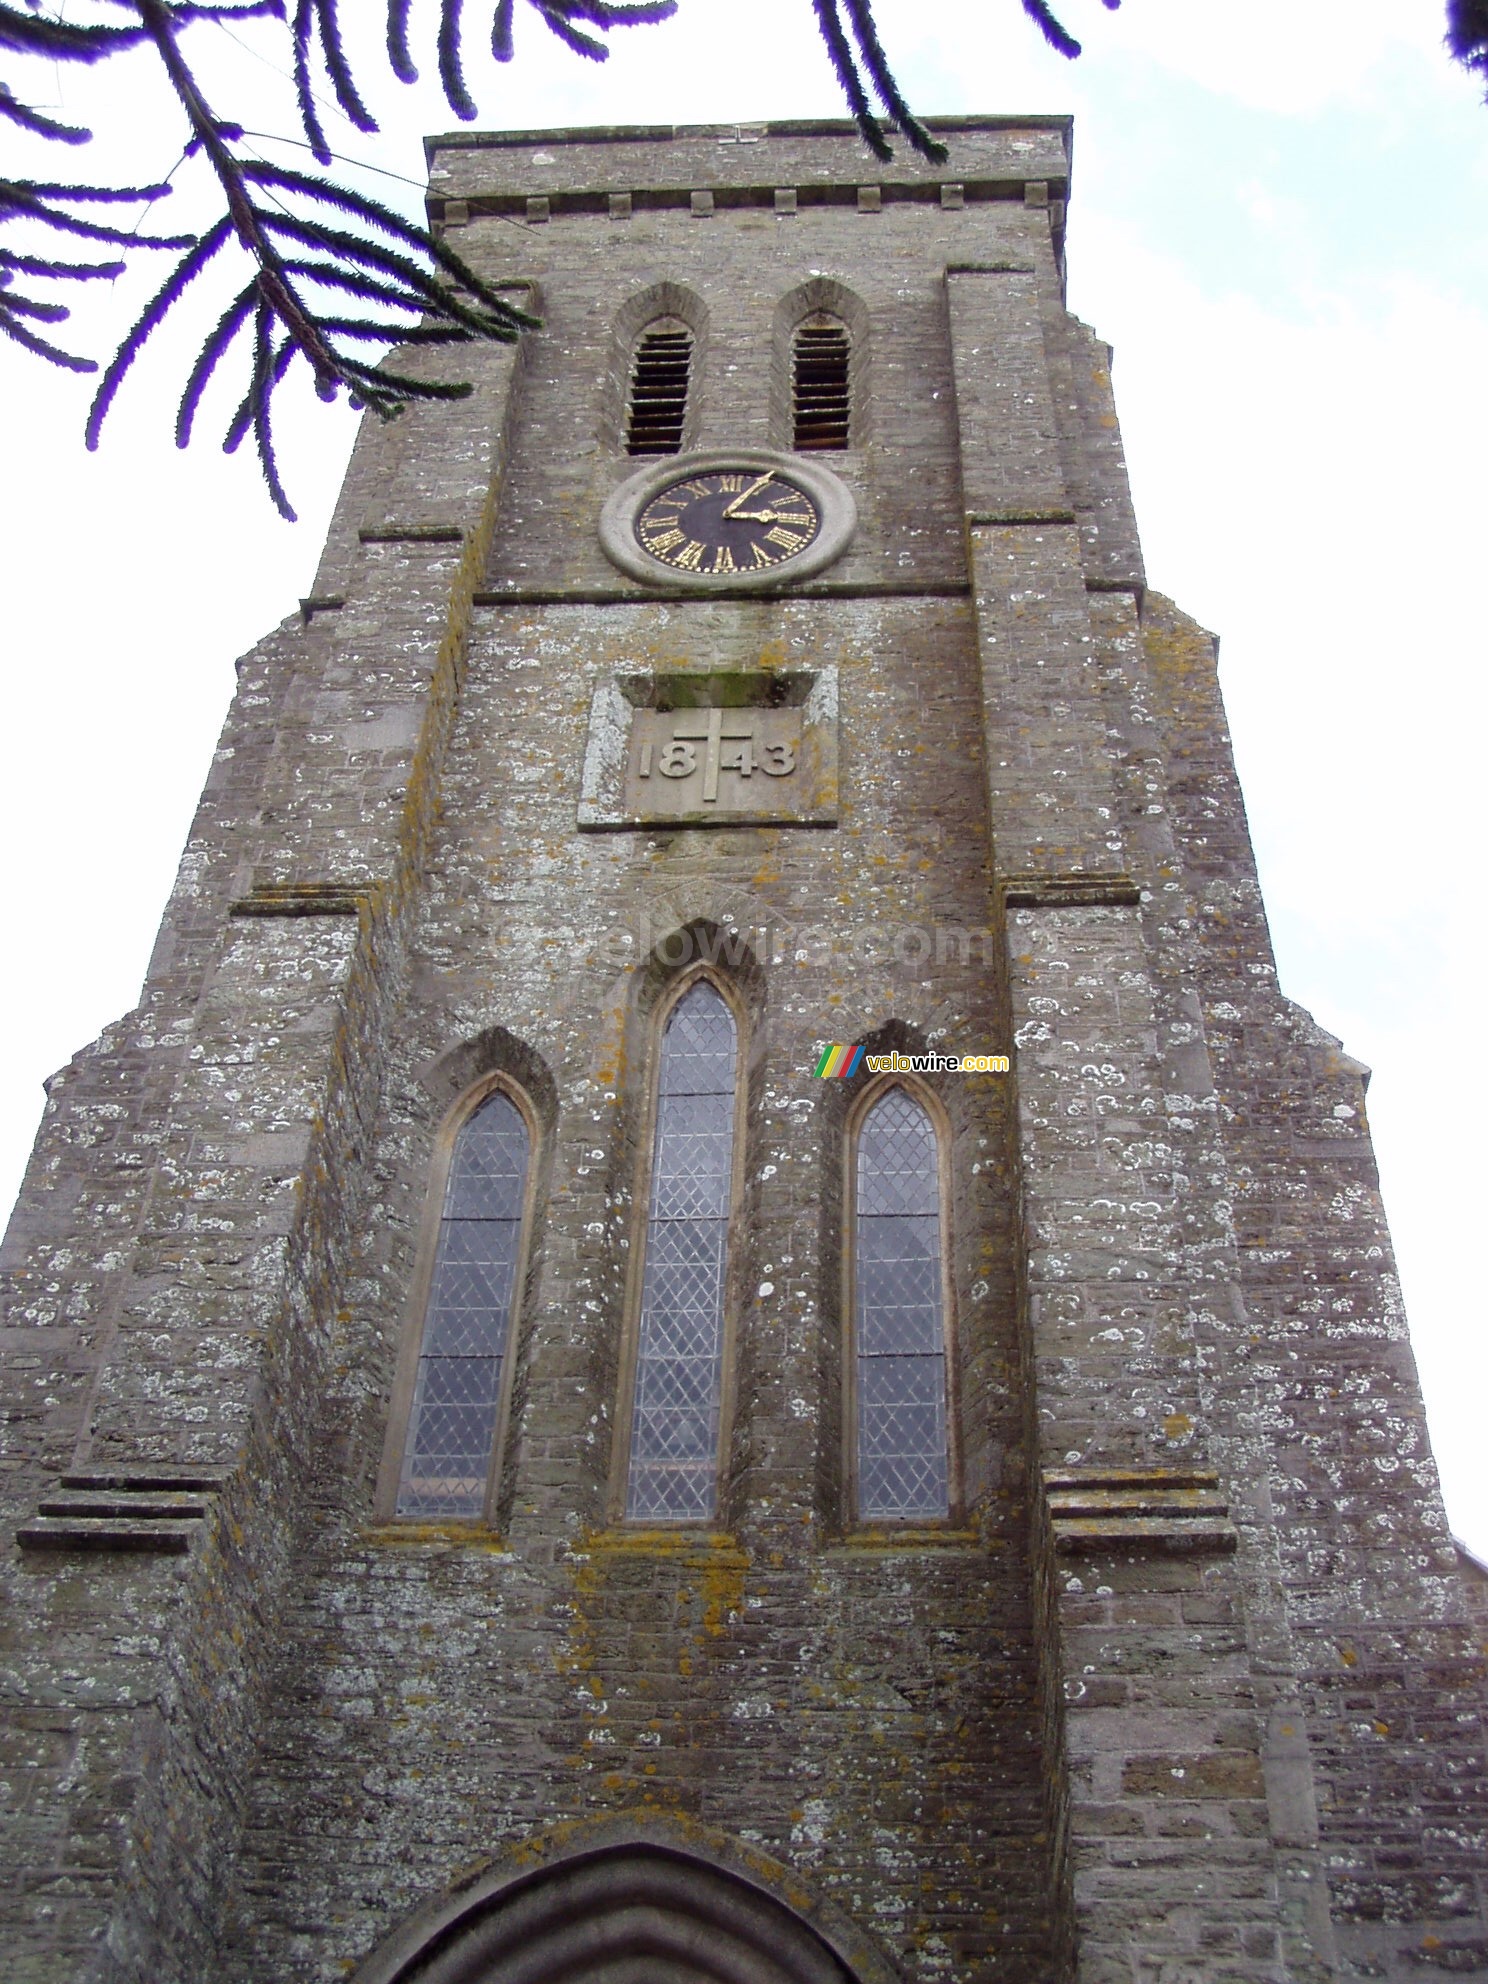 De kerk van Salcombe